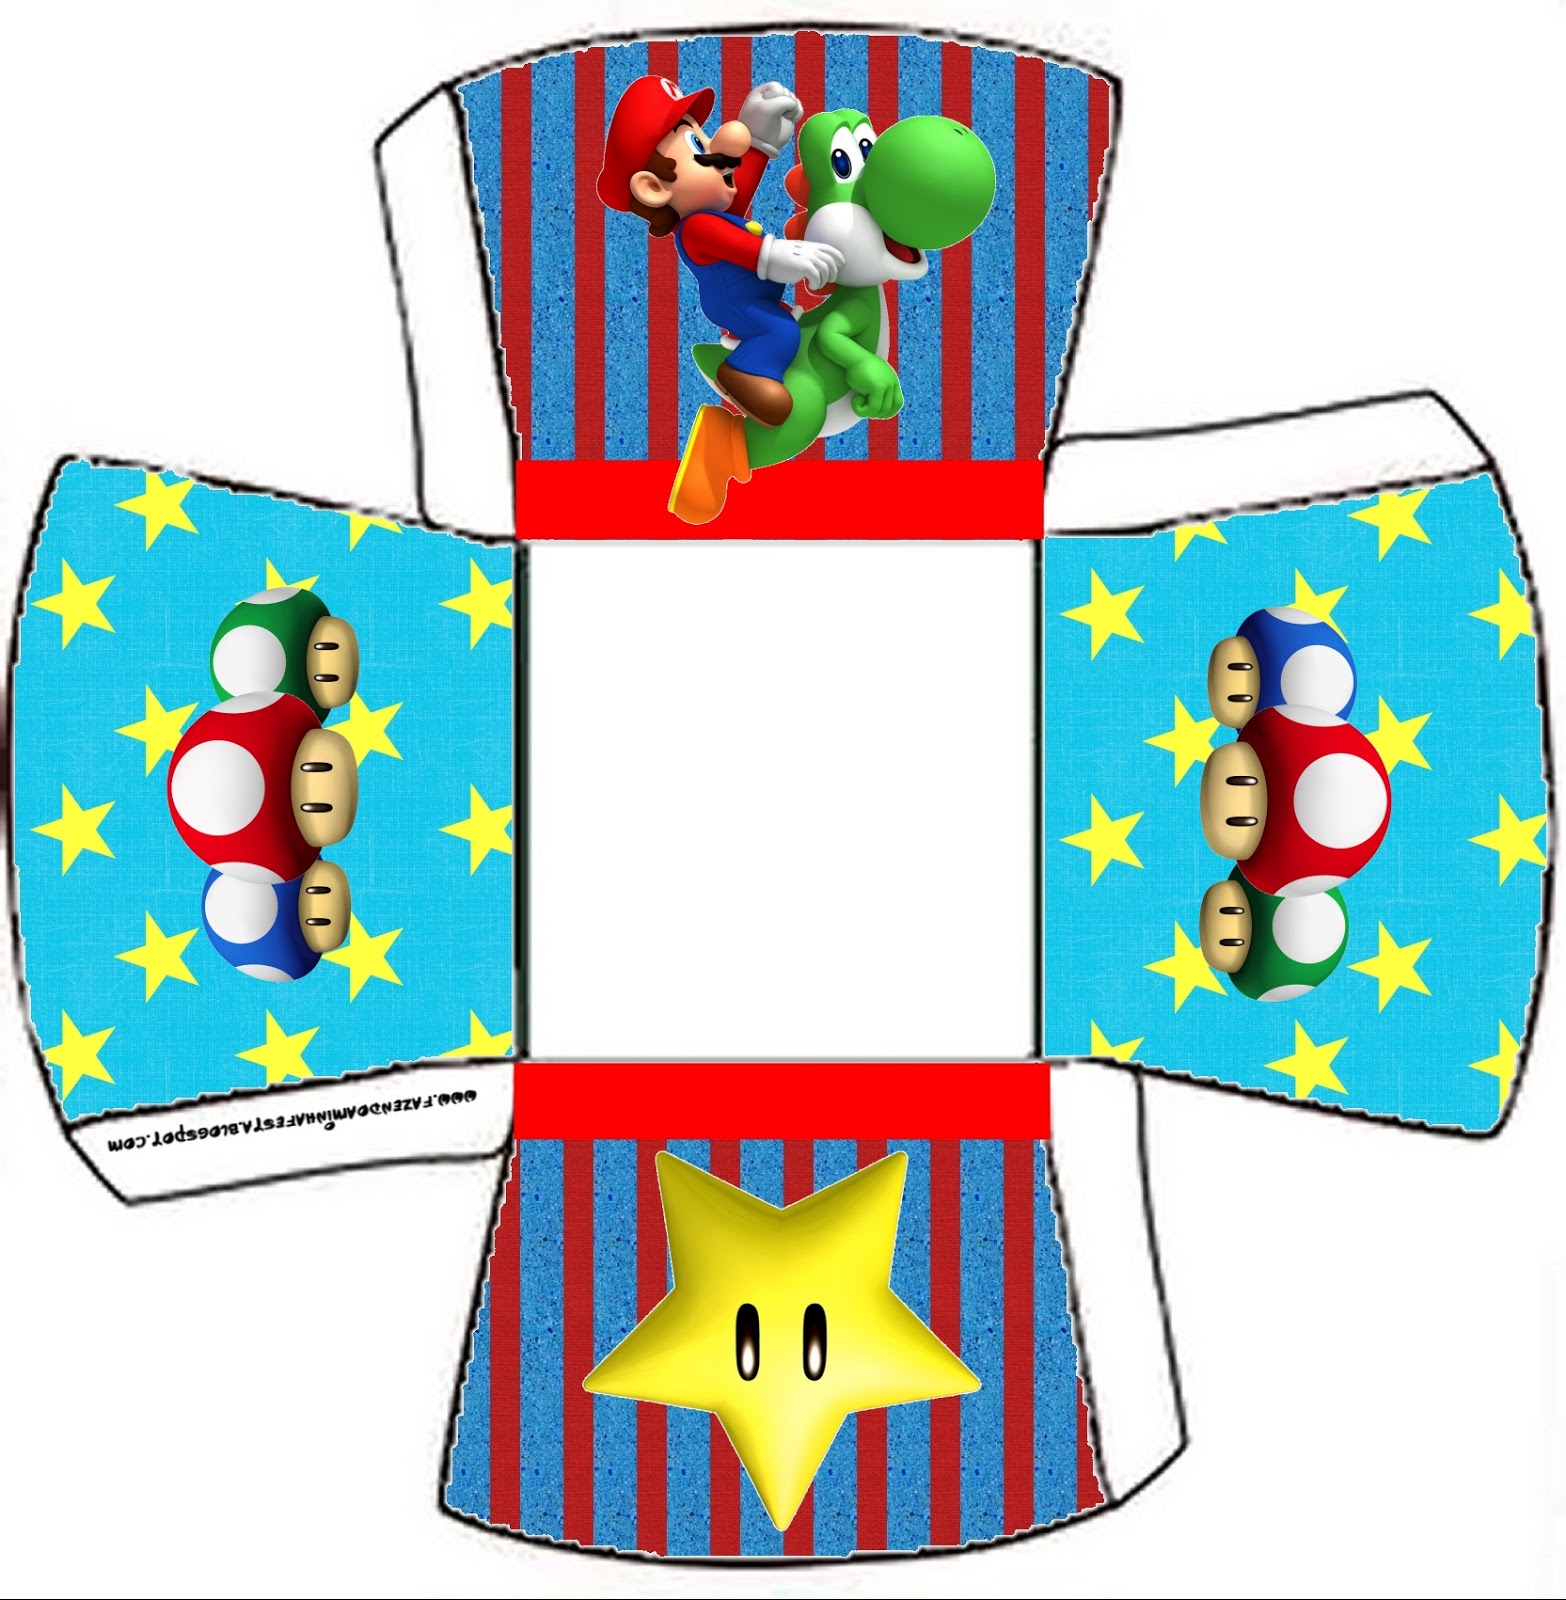 Cajitas Imprimibles De Super Mario Bros Ideas Y Material Gratis Para